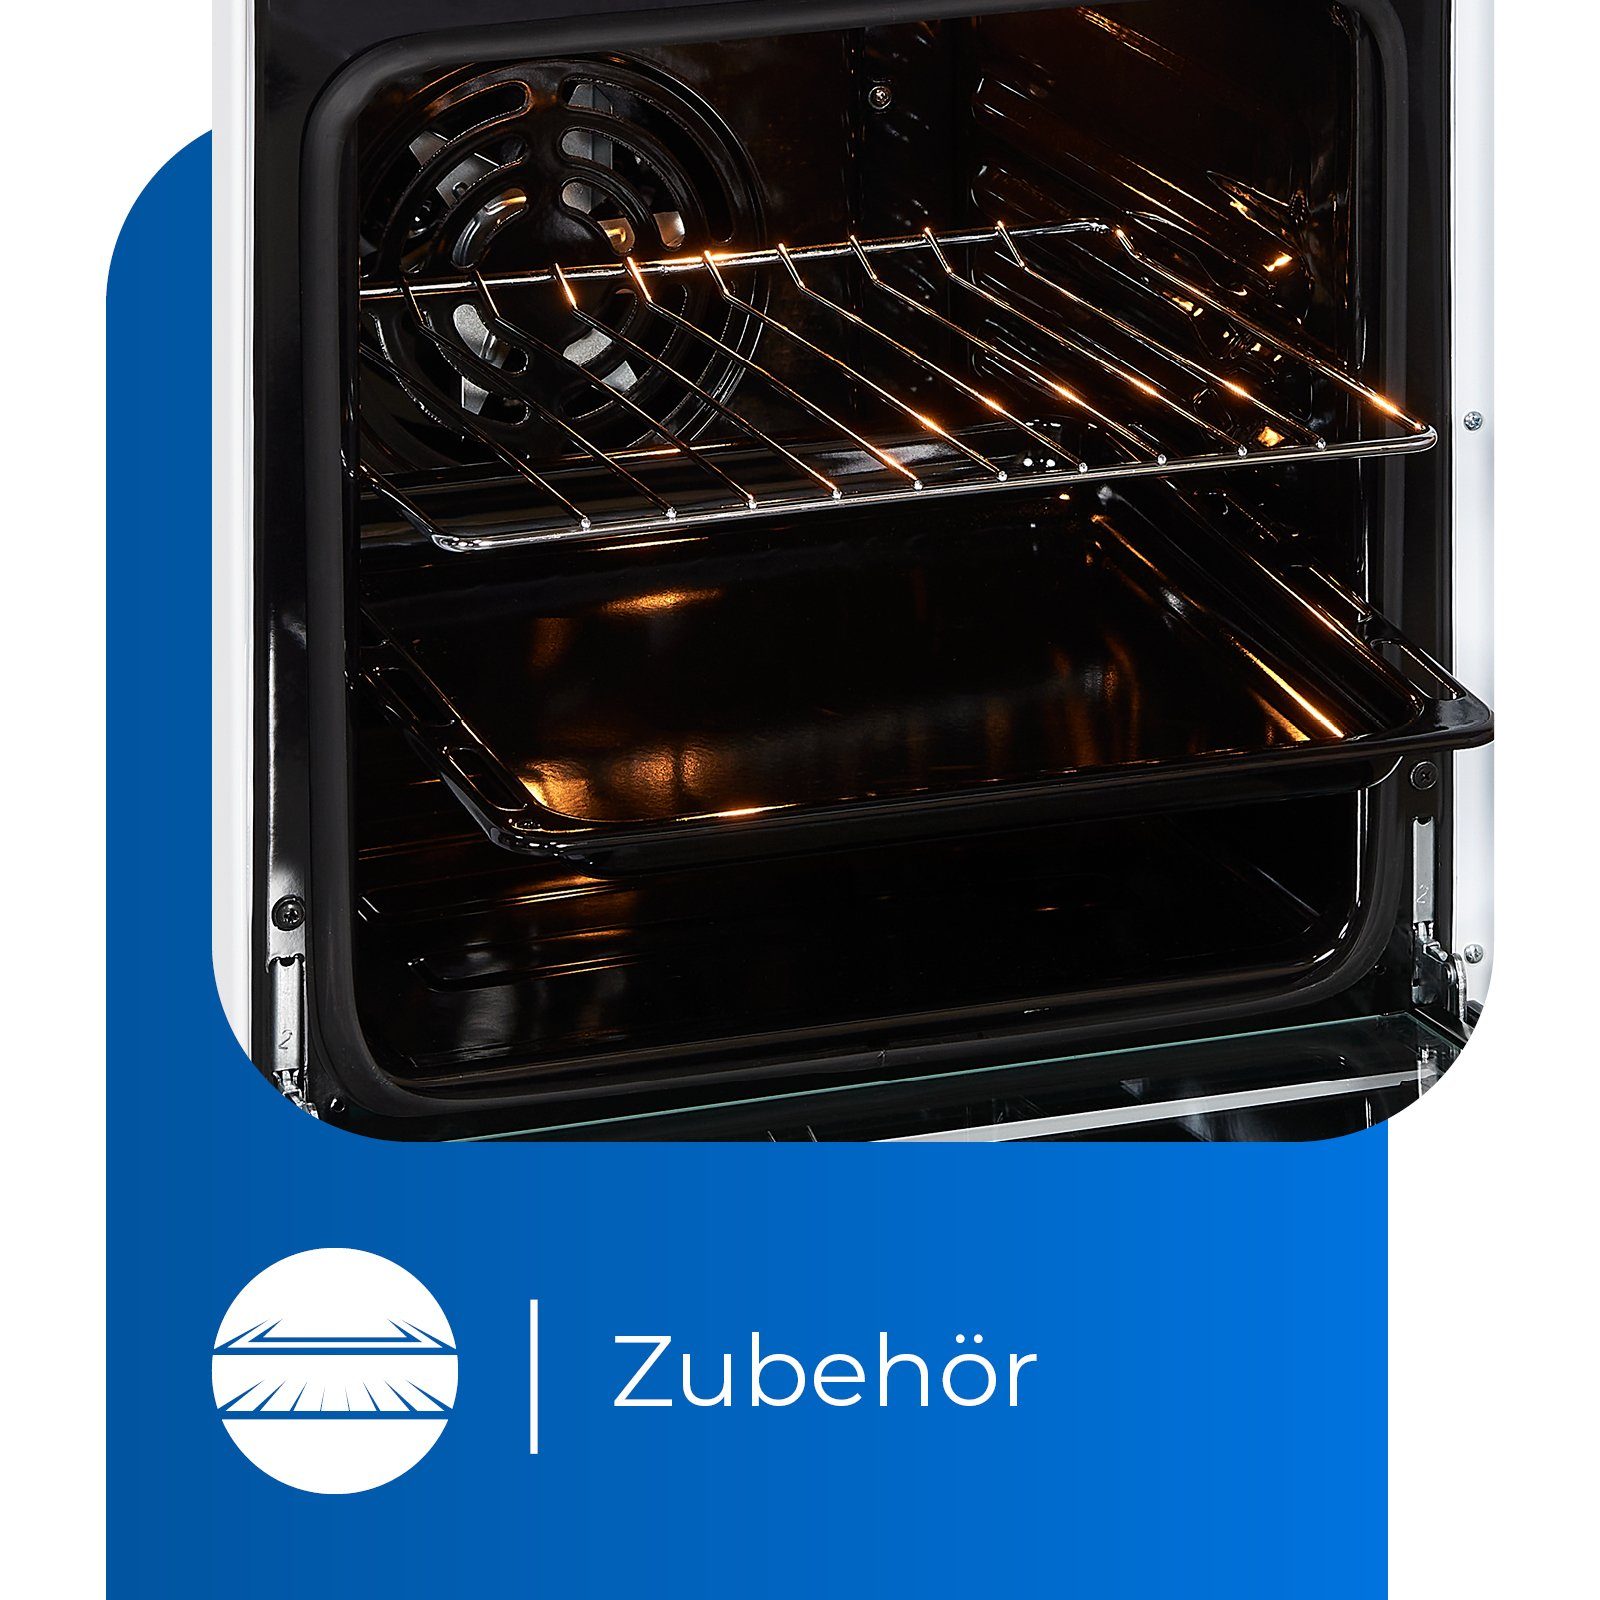 & exquisit Umluft, flexibles BZ, 5-4 ECM ideal Bräterzone Elektro-Standherd Kochen 2-Kreisbräter Grill, für weiß